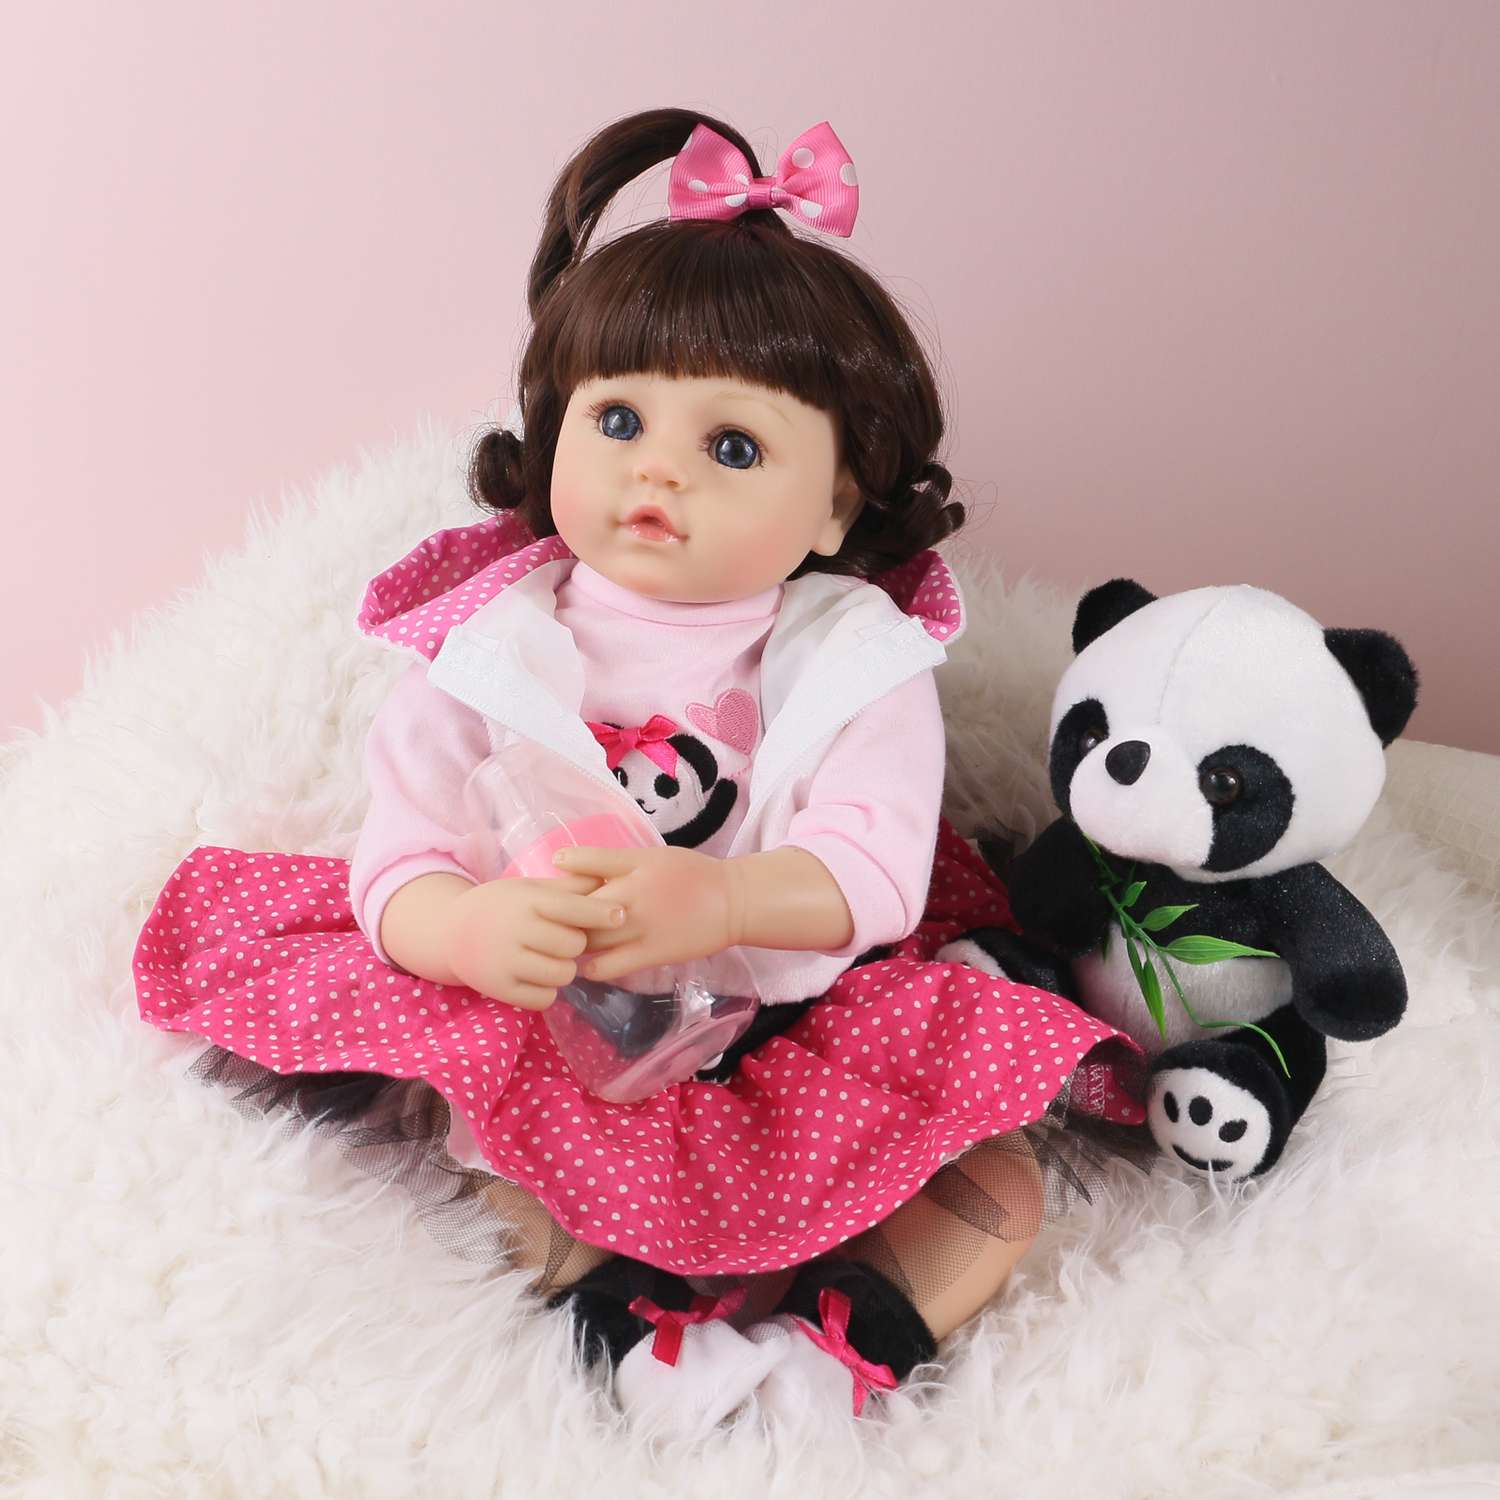 Кукла Реборн QA BABY Алина девочка большая пупс набор игрушки для девочки 42 см 45003 - фото 2